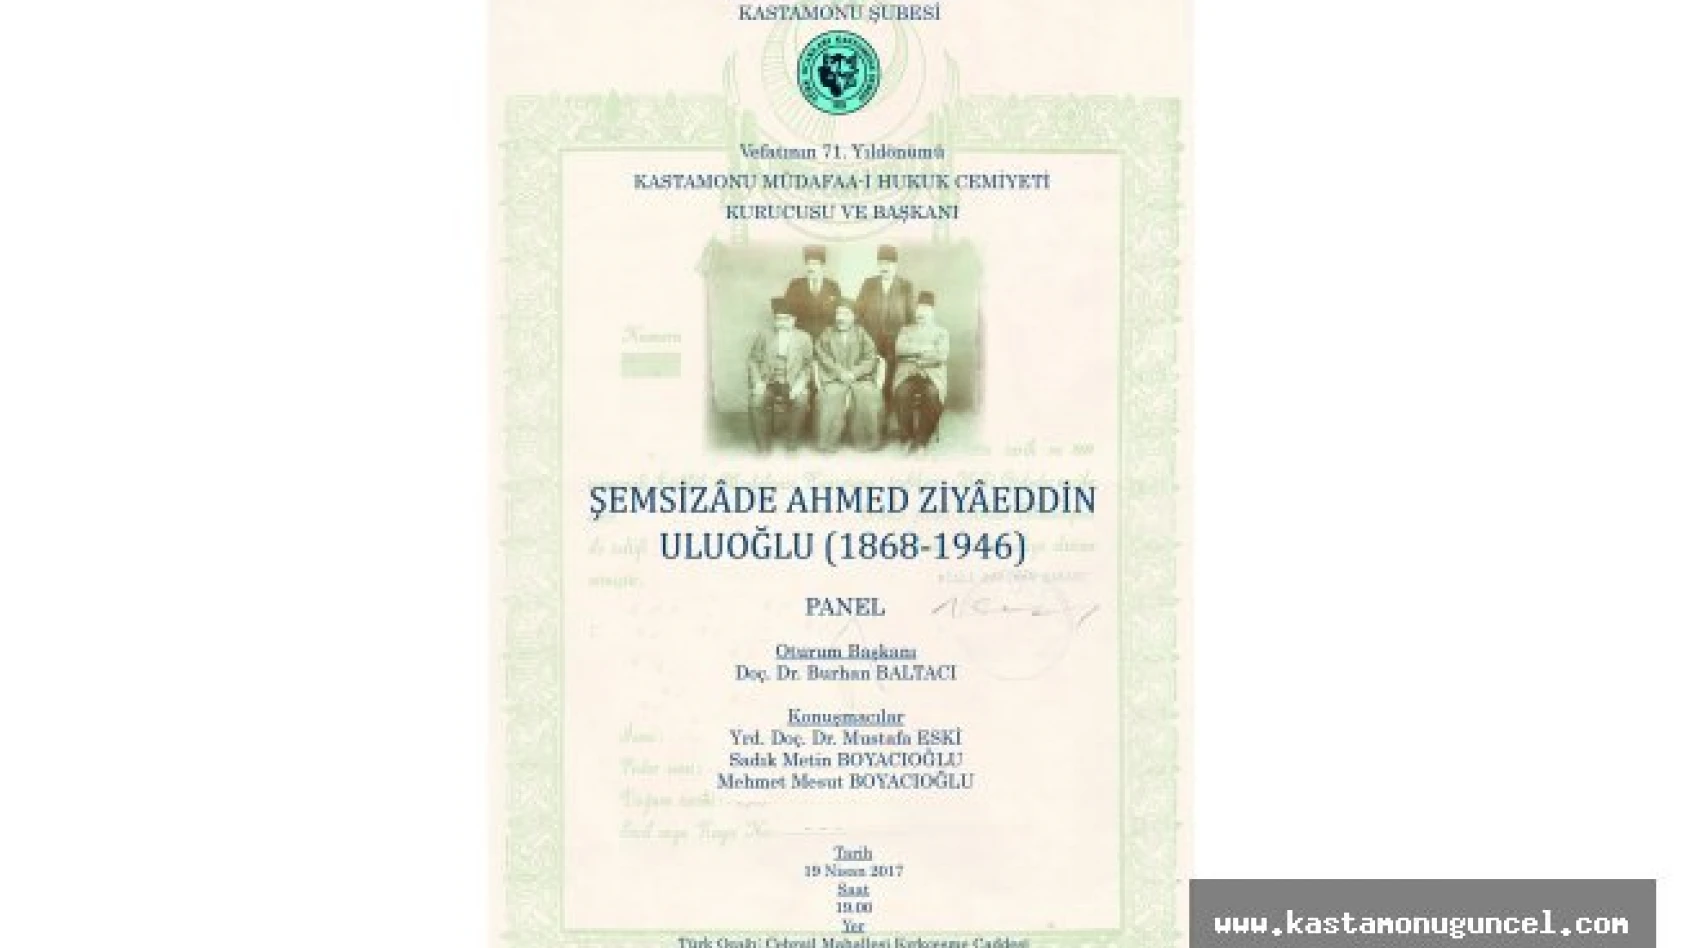 Ahmed Ziyaeddin Uluoğlu vefatının 71. yıldönümünde anılıyor